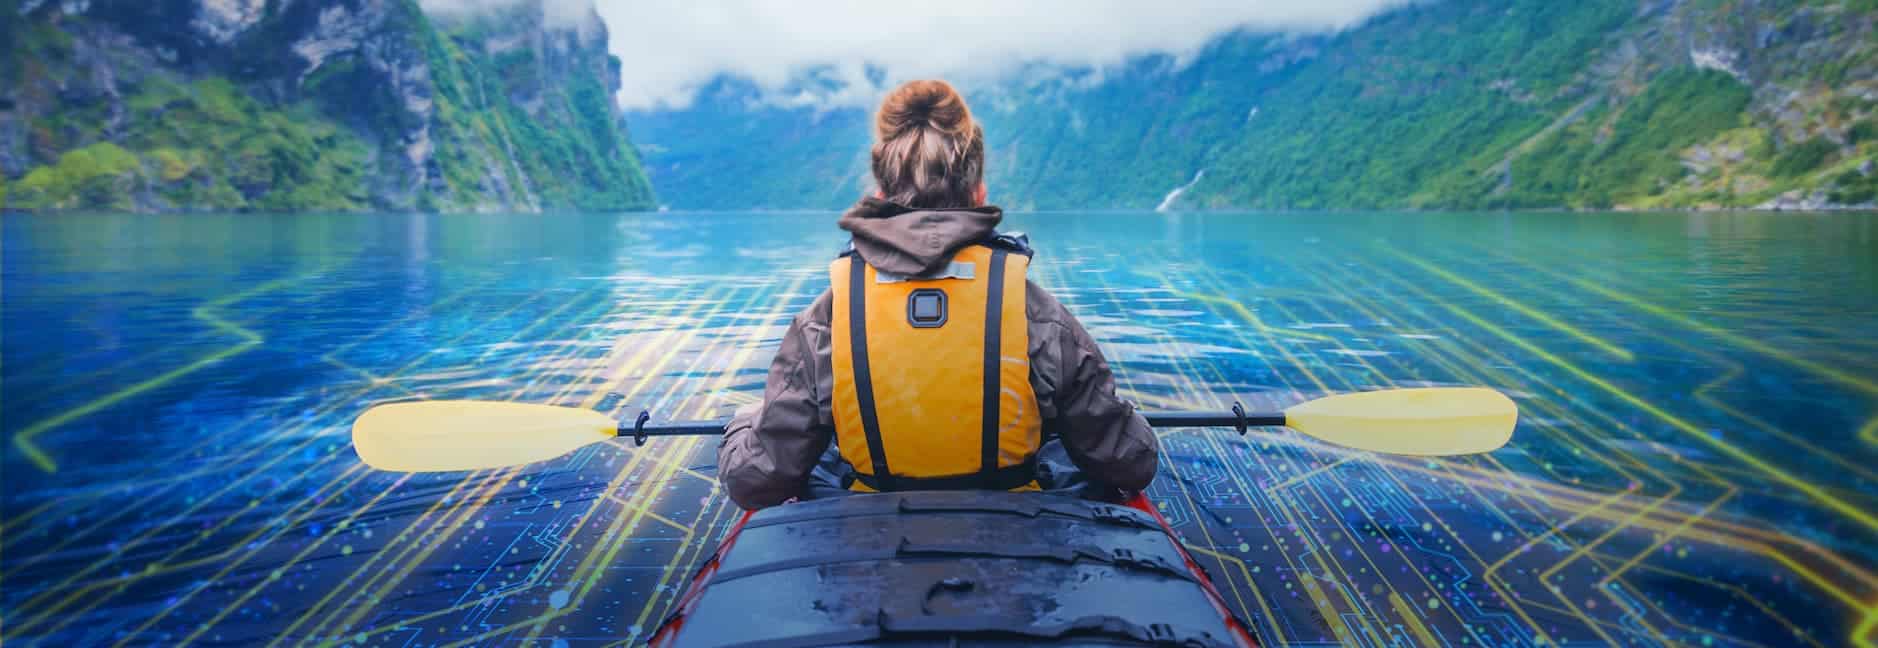 woman kayaking in mountain lake